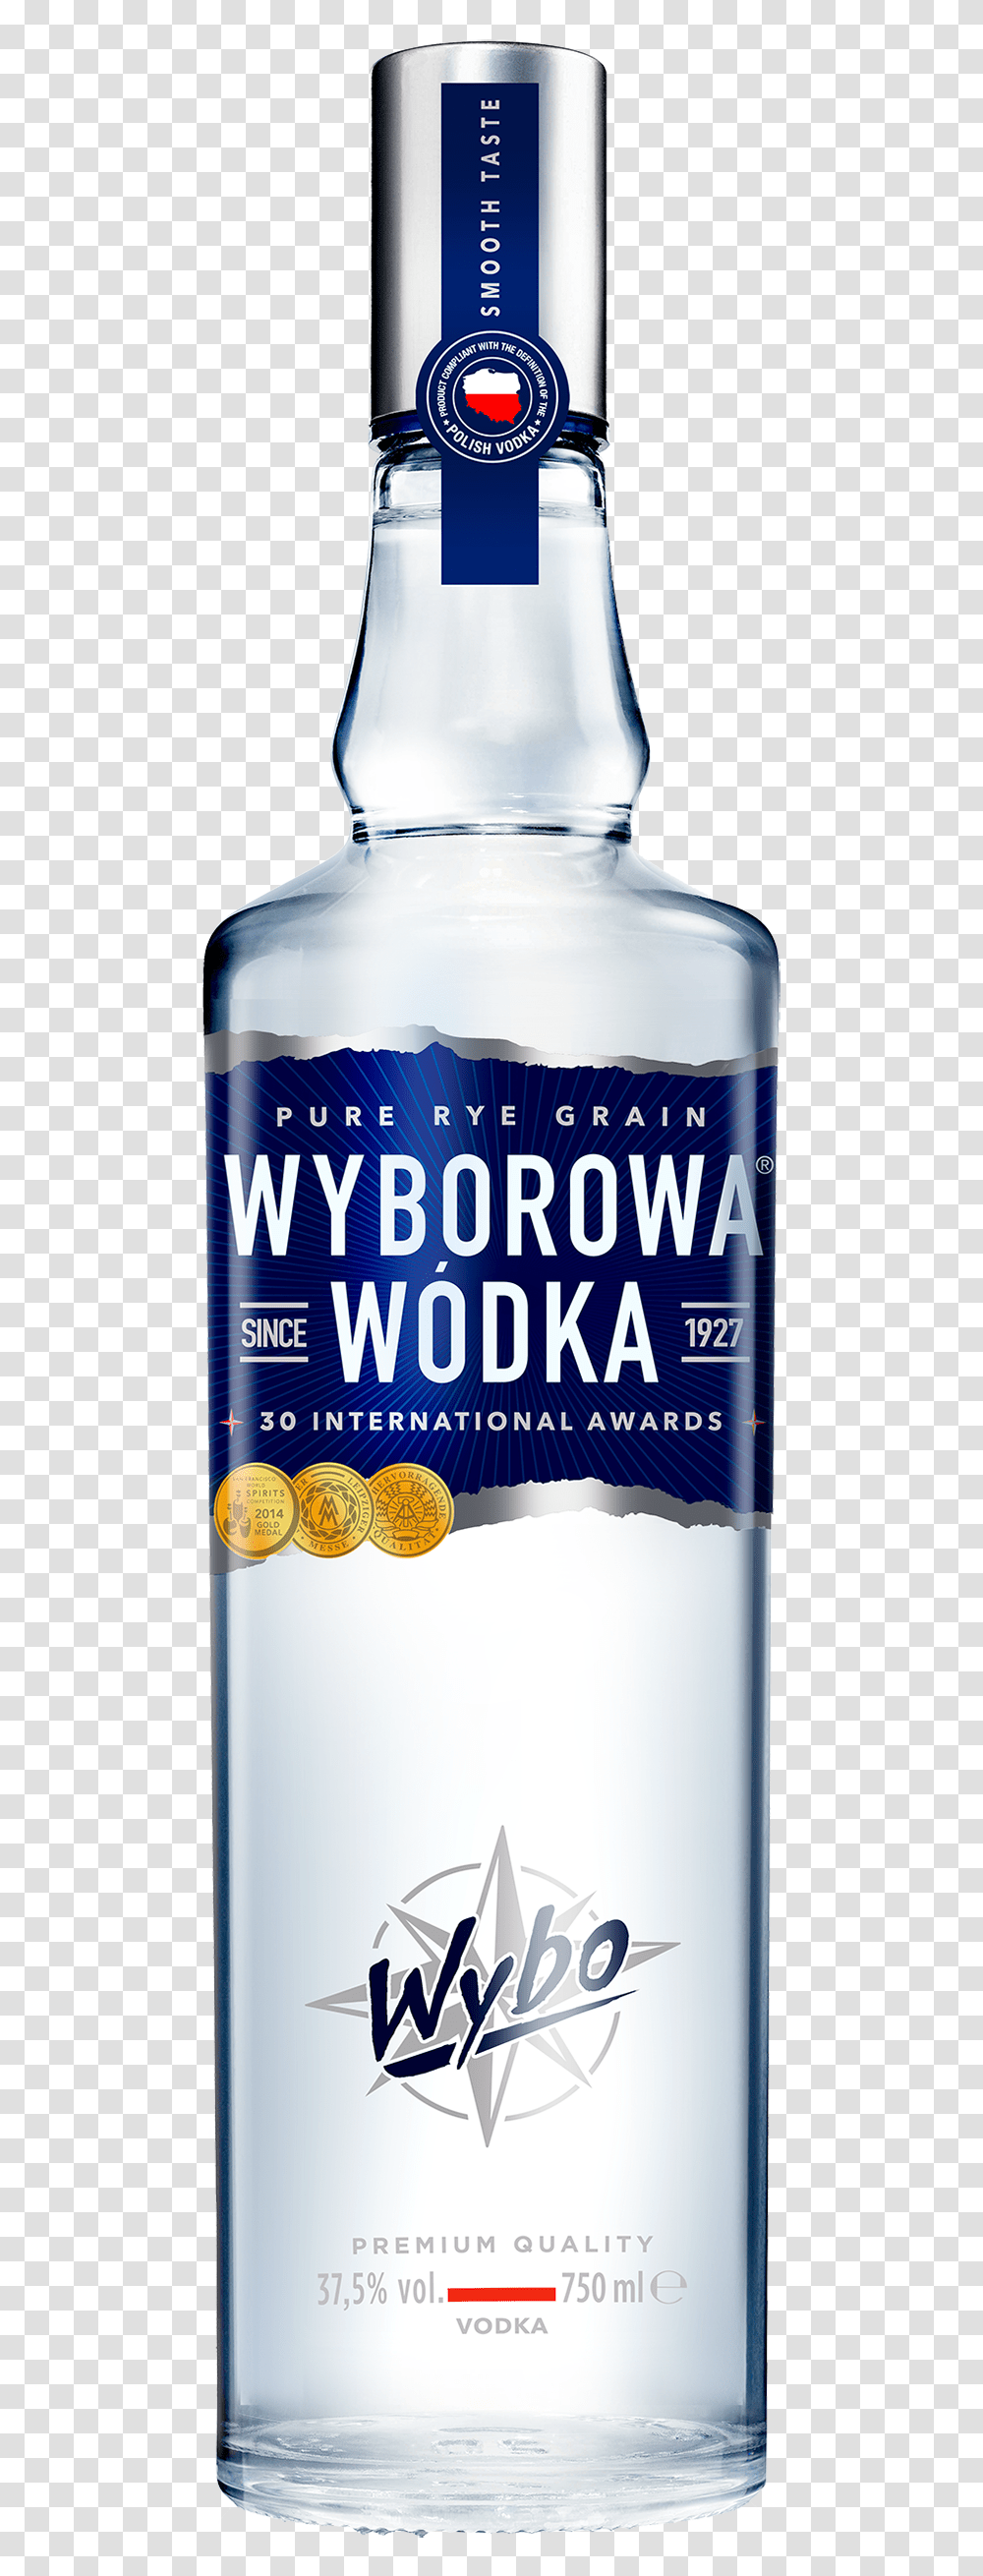 Vodka, Drink, Beverage, Liquor, Alcohol Transparent Png